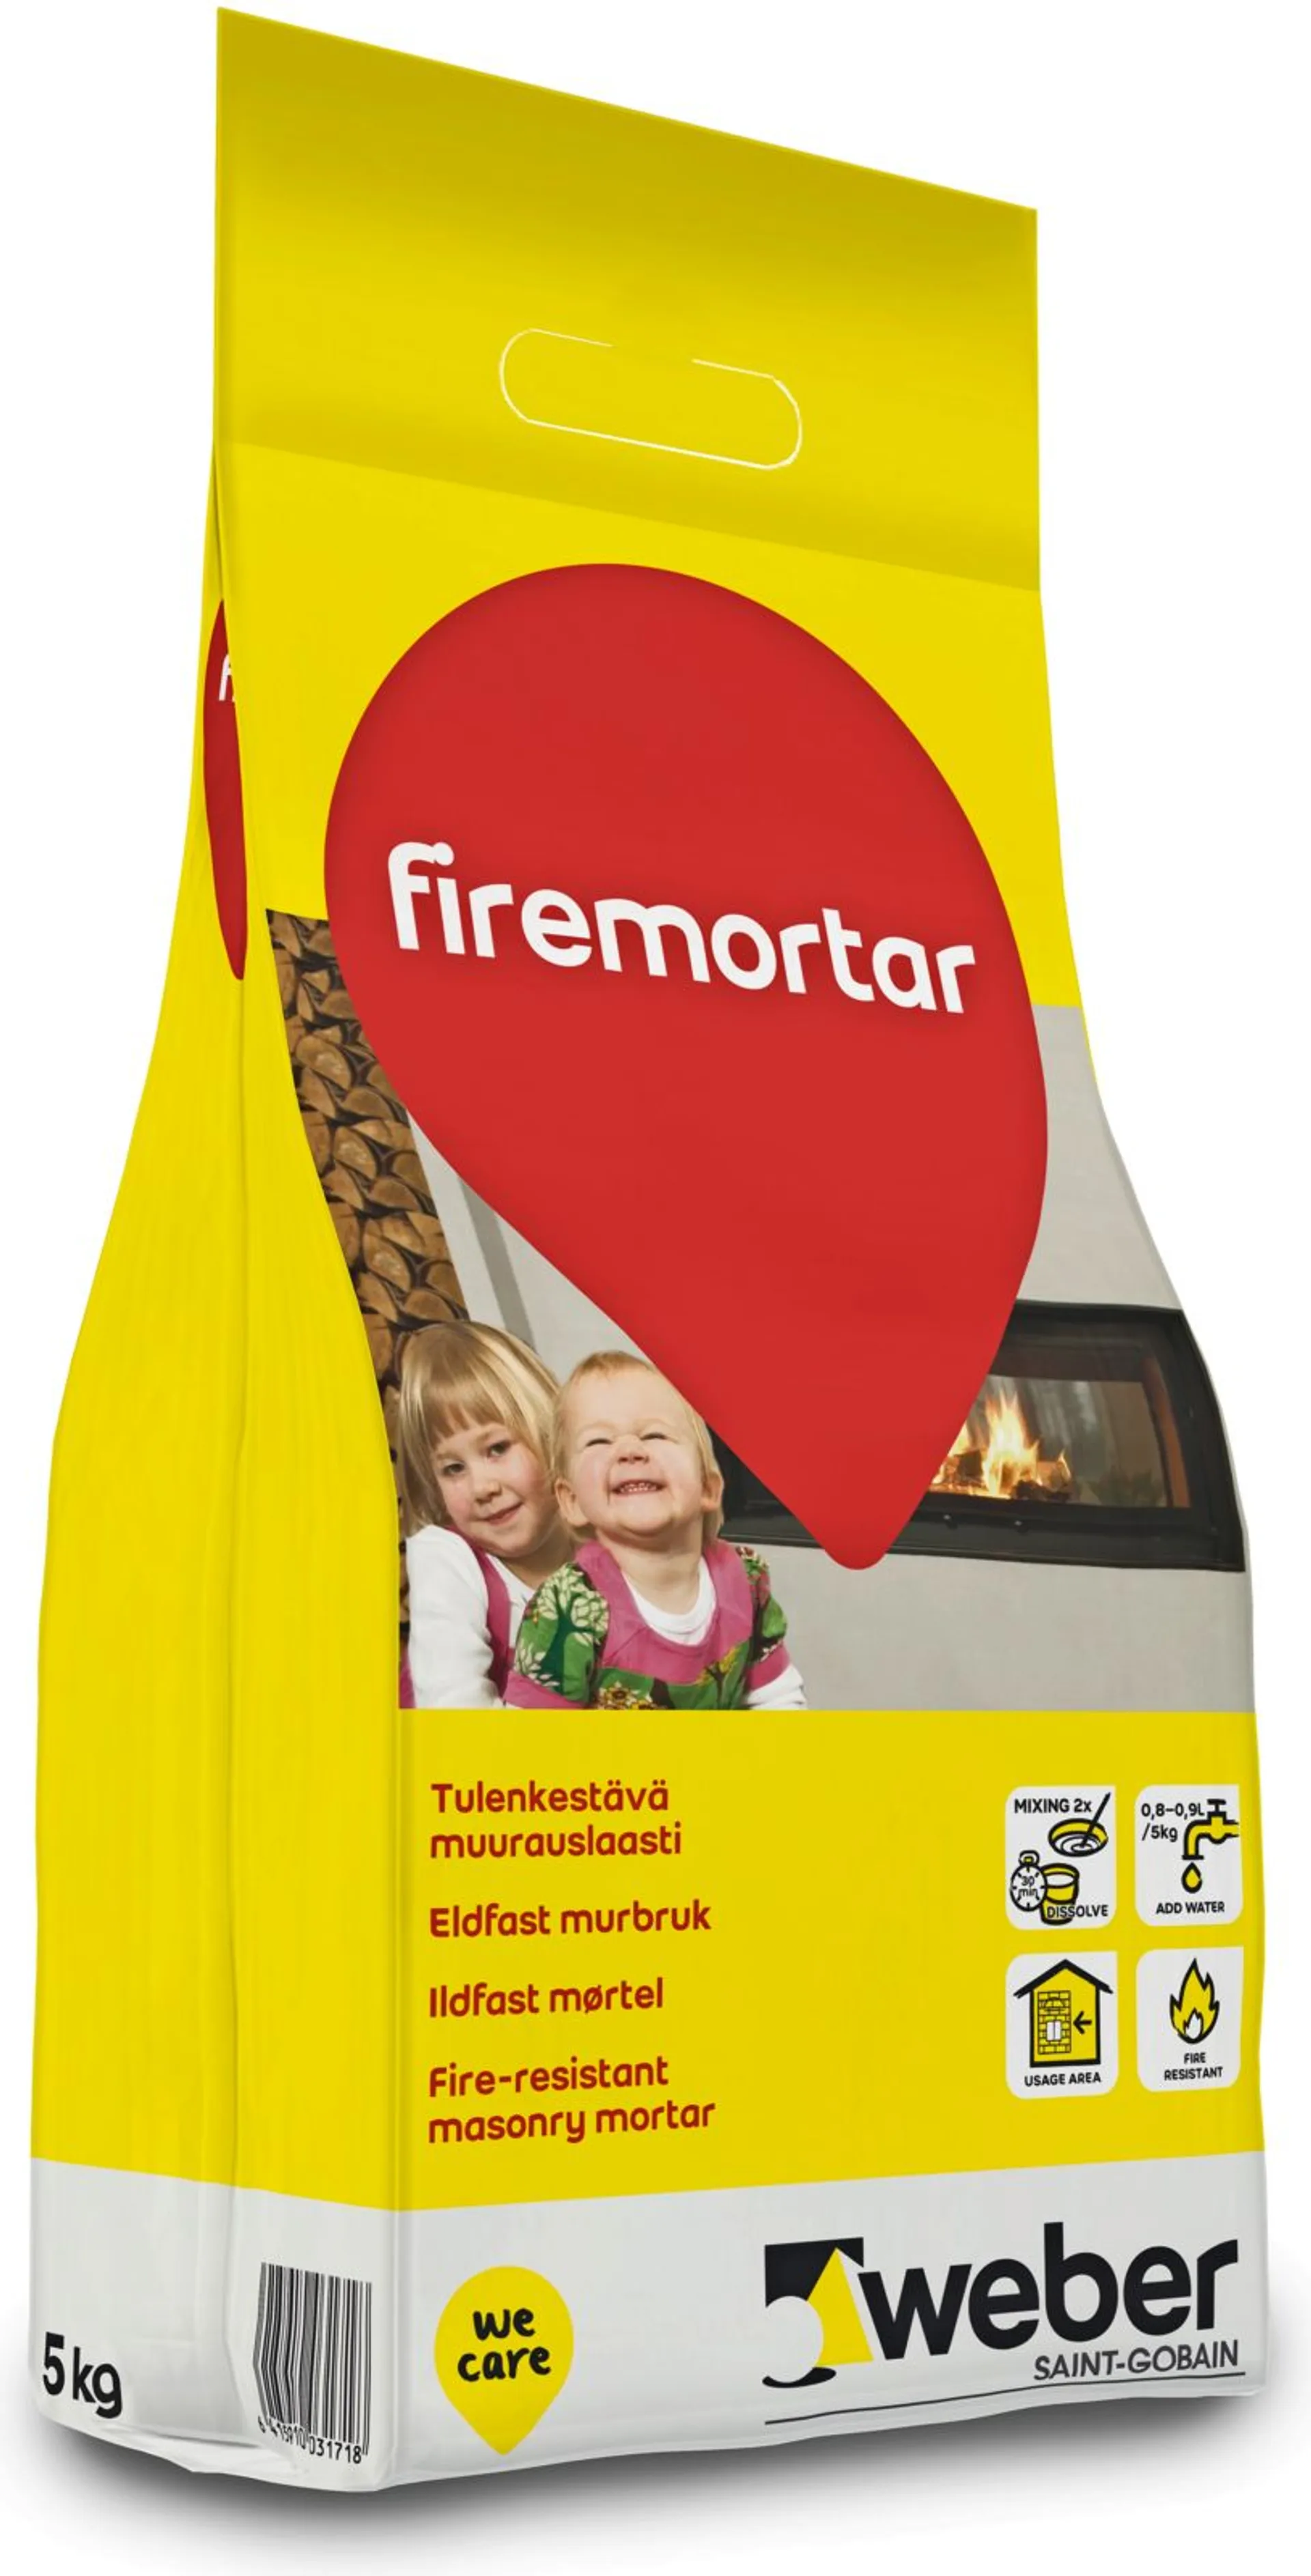 Weber Firemortar 5kg tulenkestävä muurauslaasti